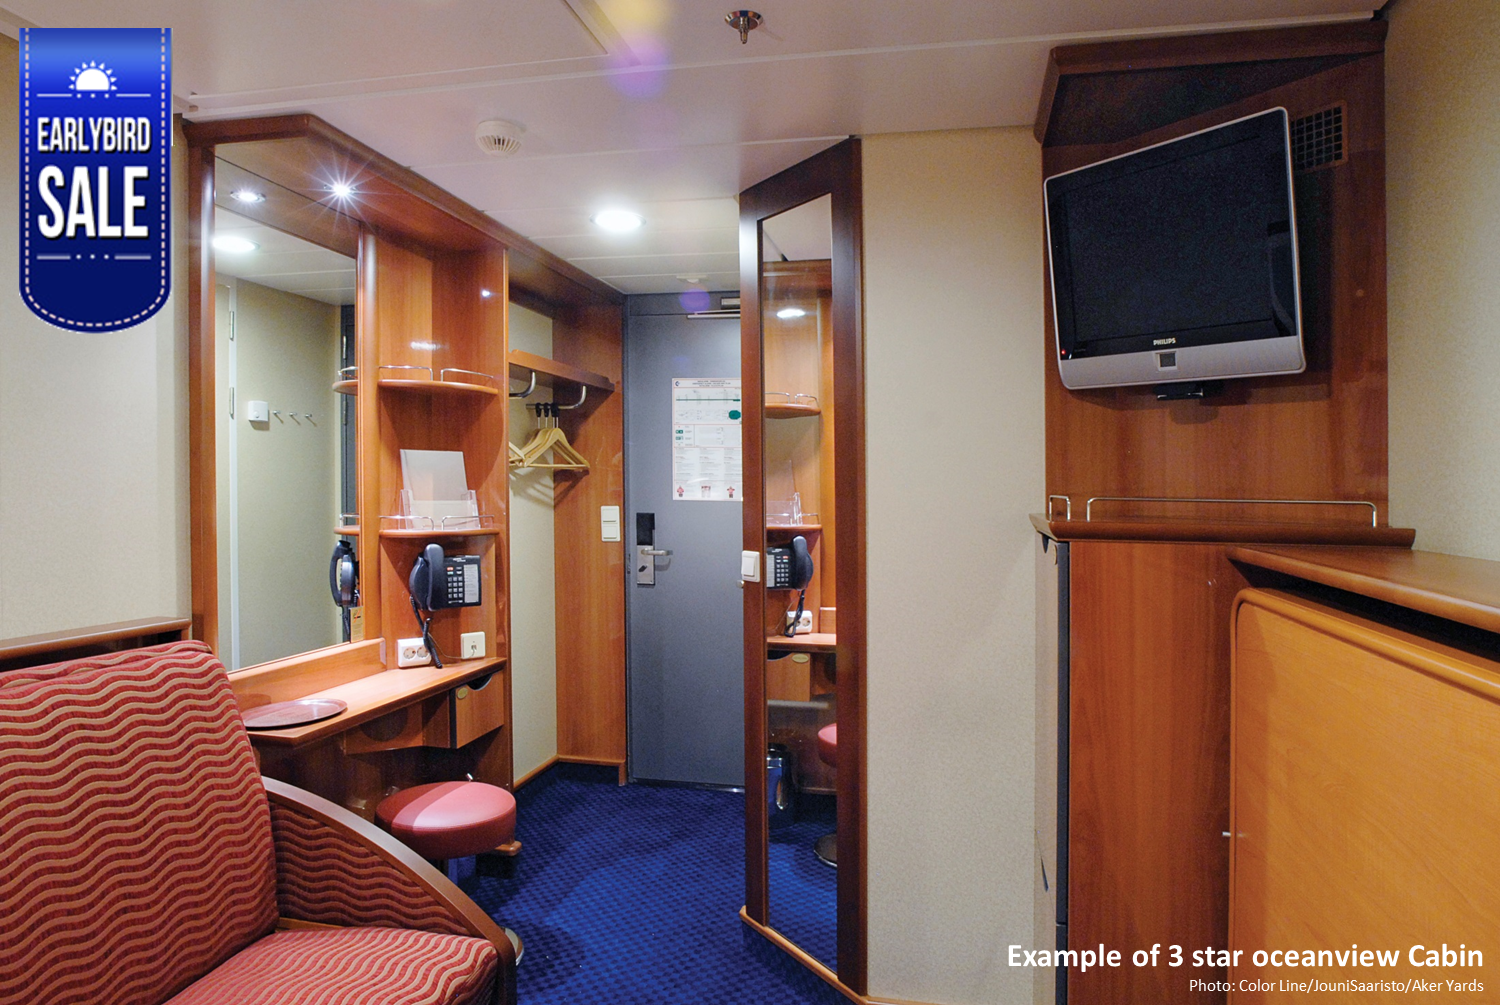 1. Standard Oceanview Cabin - Single occupancy, double bed